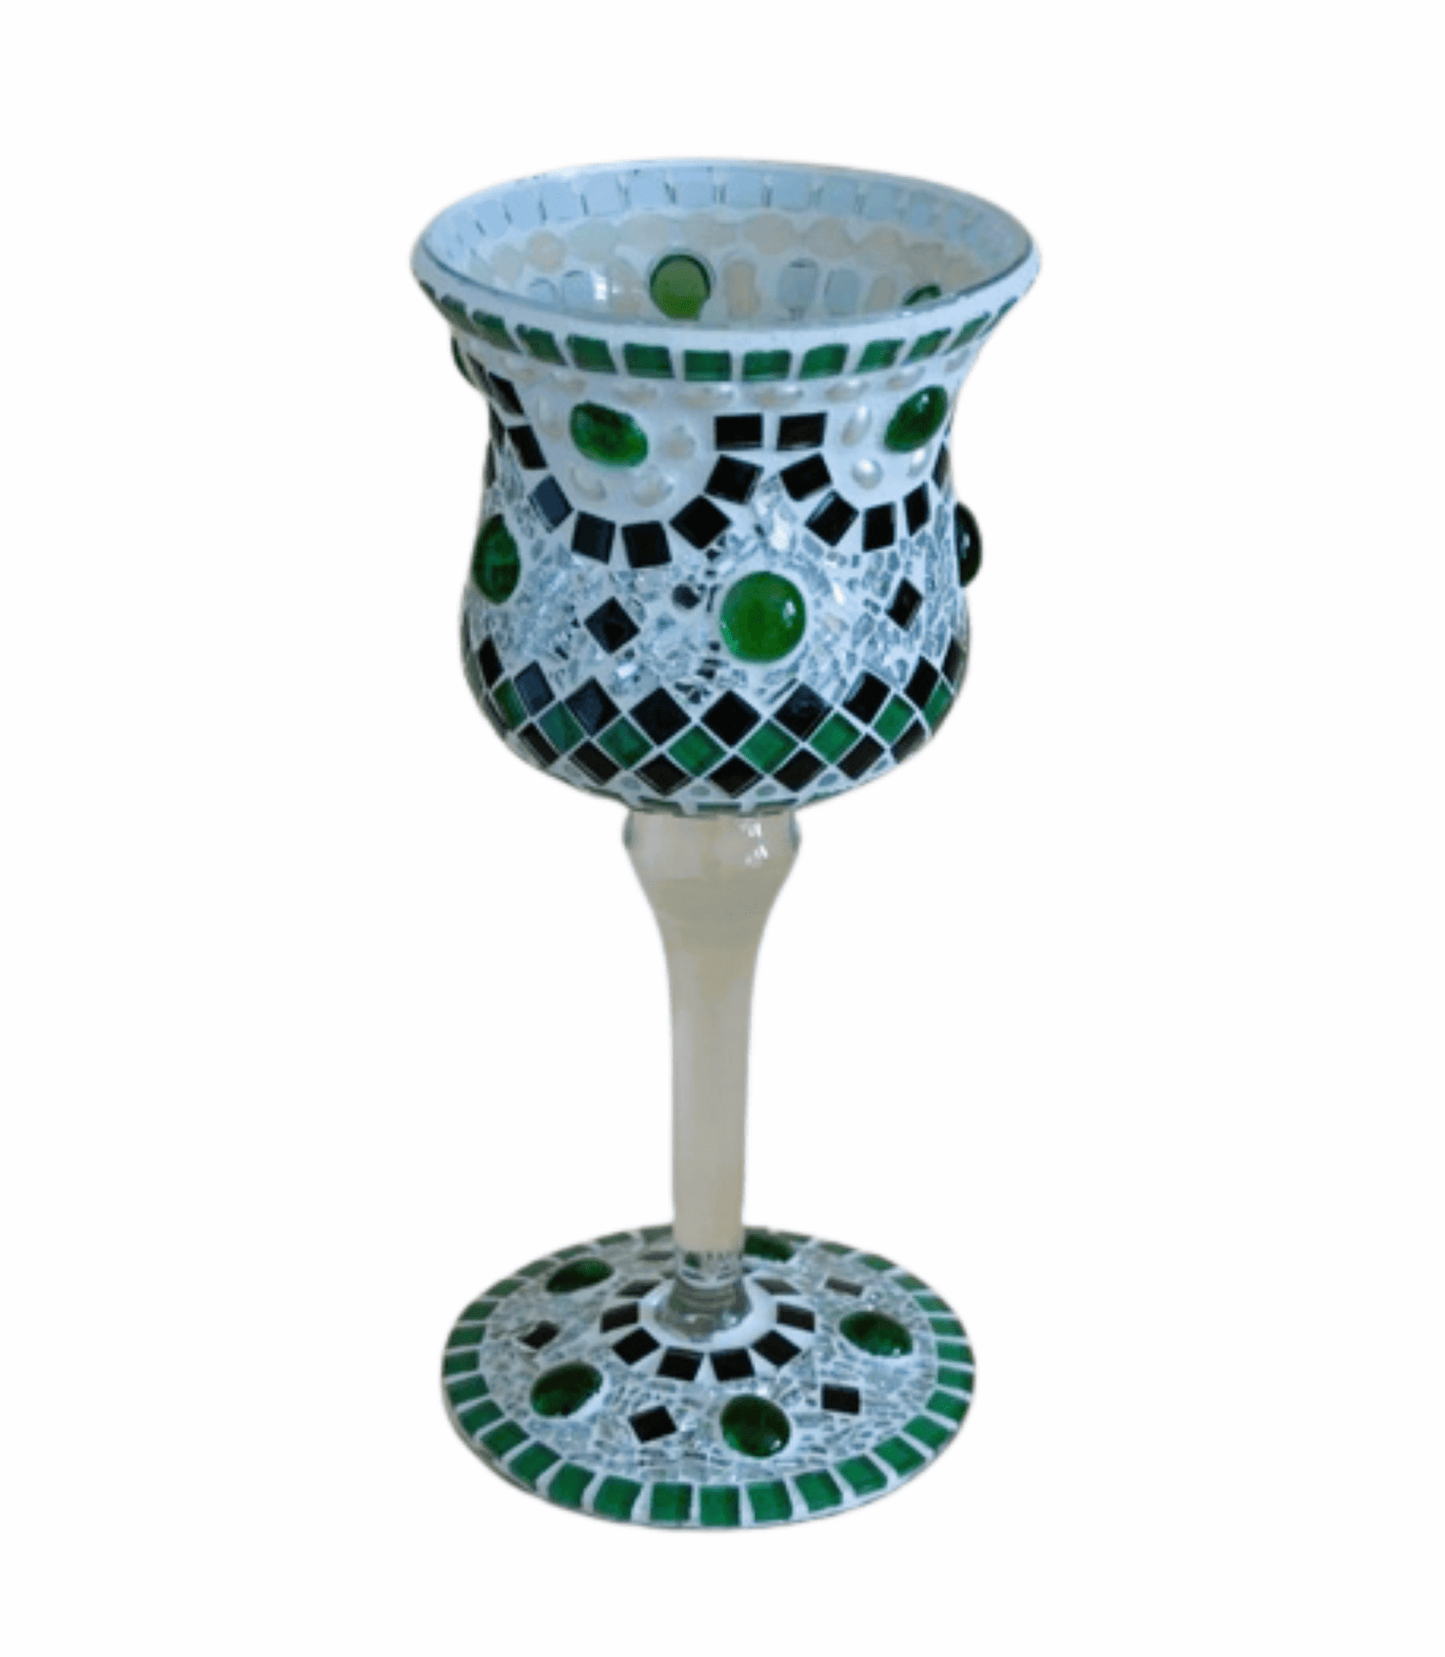 Windlicht Pokal rot/grün schwarz silber 29 cm hoch - handgemacht - Mosaikkasten aus alt mach neu dekoidee